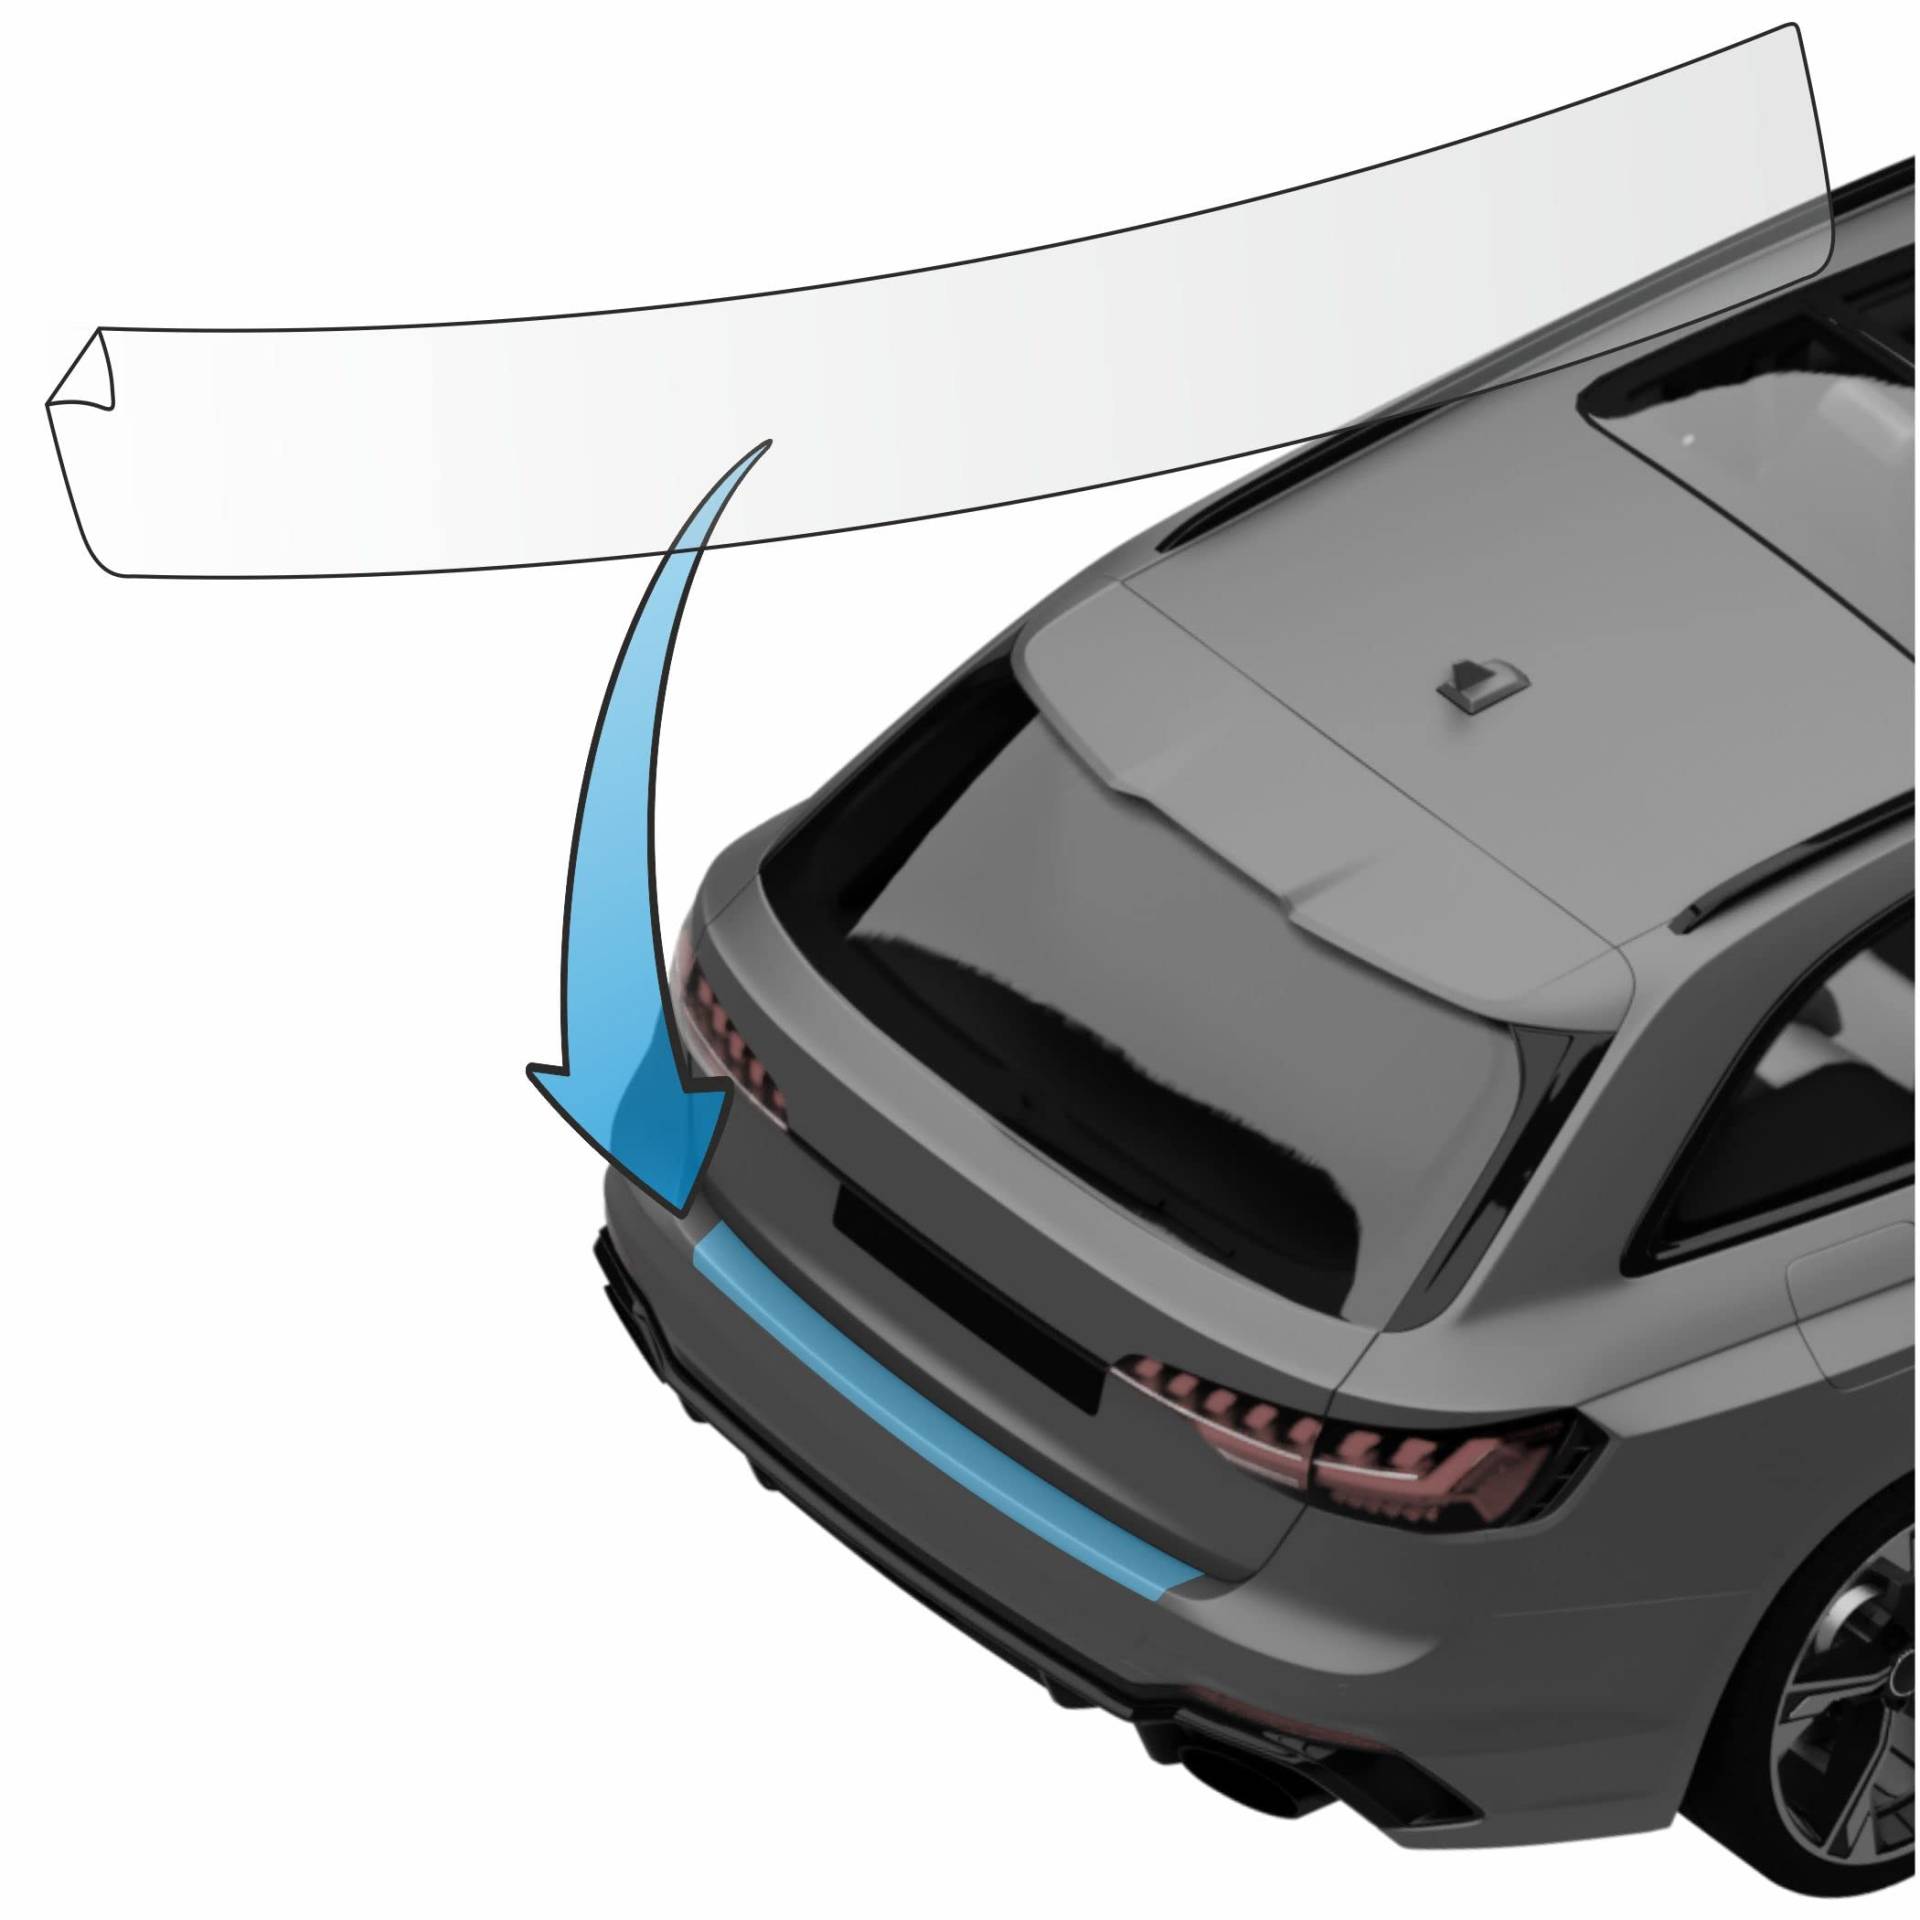 MisterLacky – Lackschutzfolie mit Rakel als Ladekantenschutz Folie passend für VW Passat Variant (VII) B7,Typ 3C,BJ 10/2010-11/2014 in transparent (320µm) von Lackschutzshop